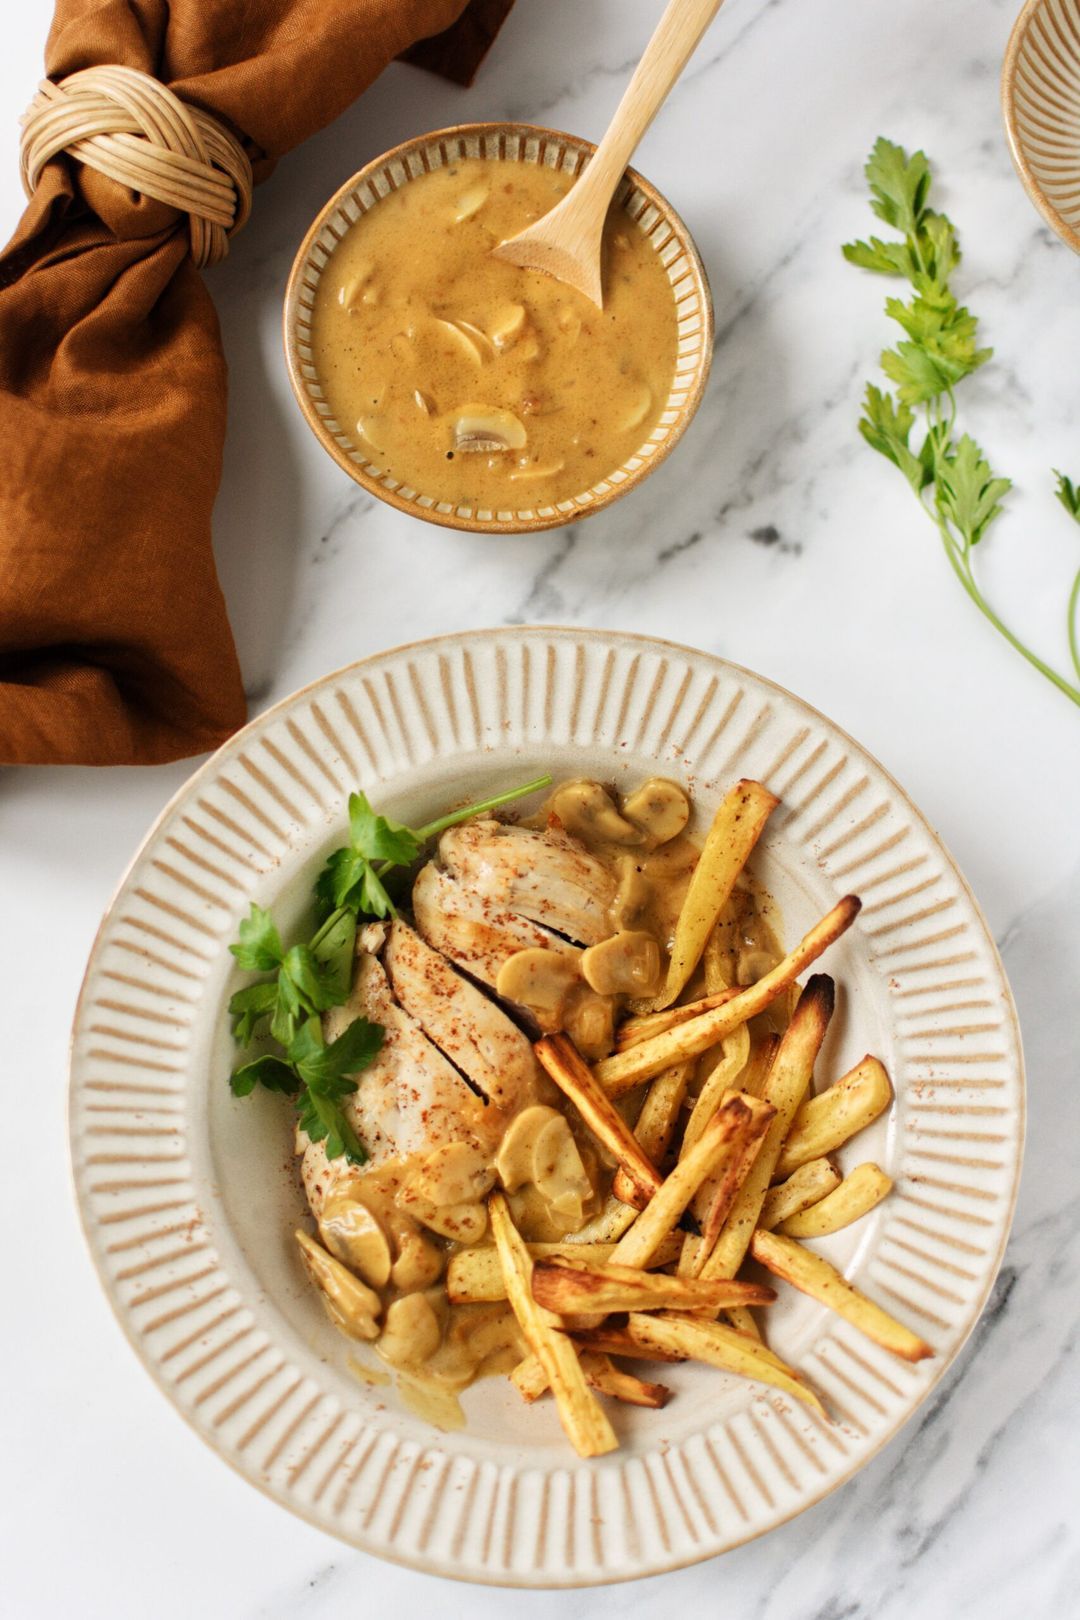 Chicken Archiduc with parsnip fries